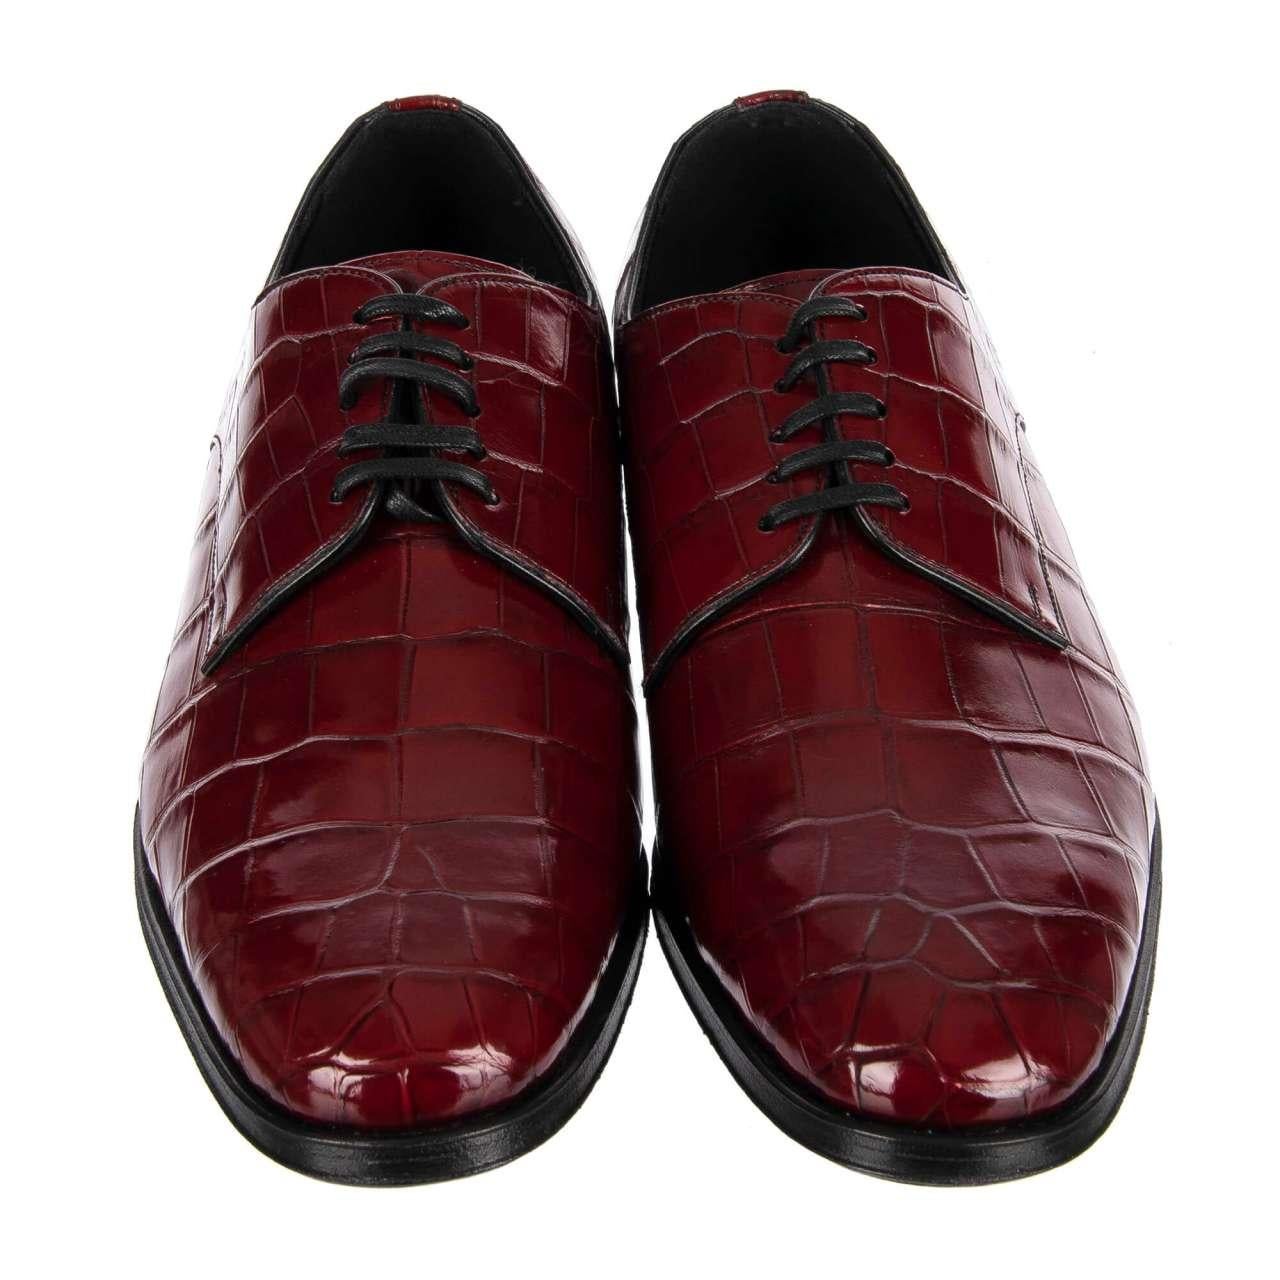 Dolce & Gabbana Crocodile Leather Derby Shoes VENEZIA Bordeaux Red EUR 39 In Excellent Condition For Sale In Erkrath, DE